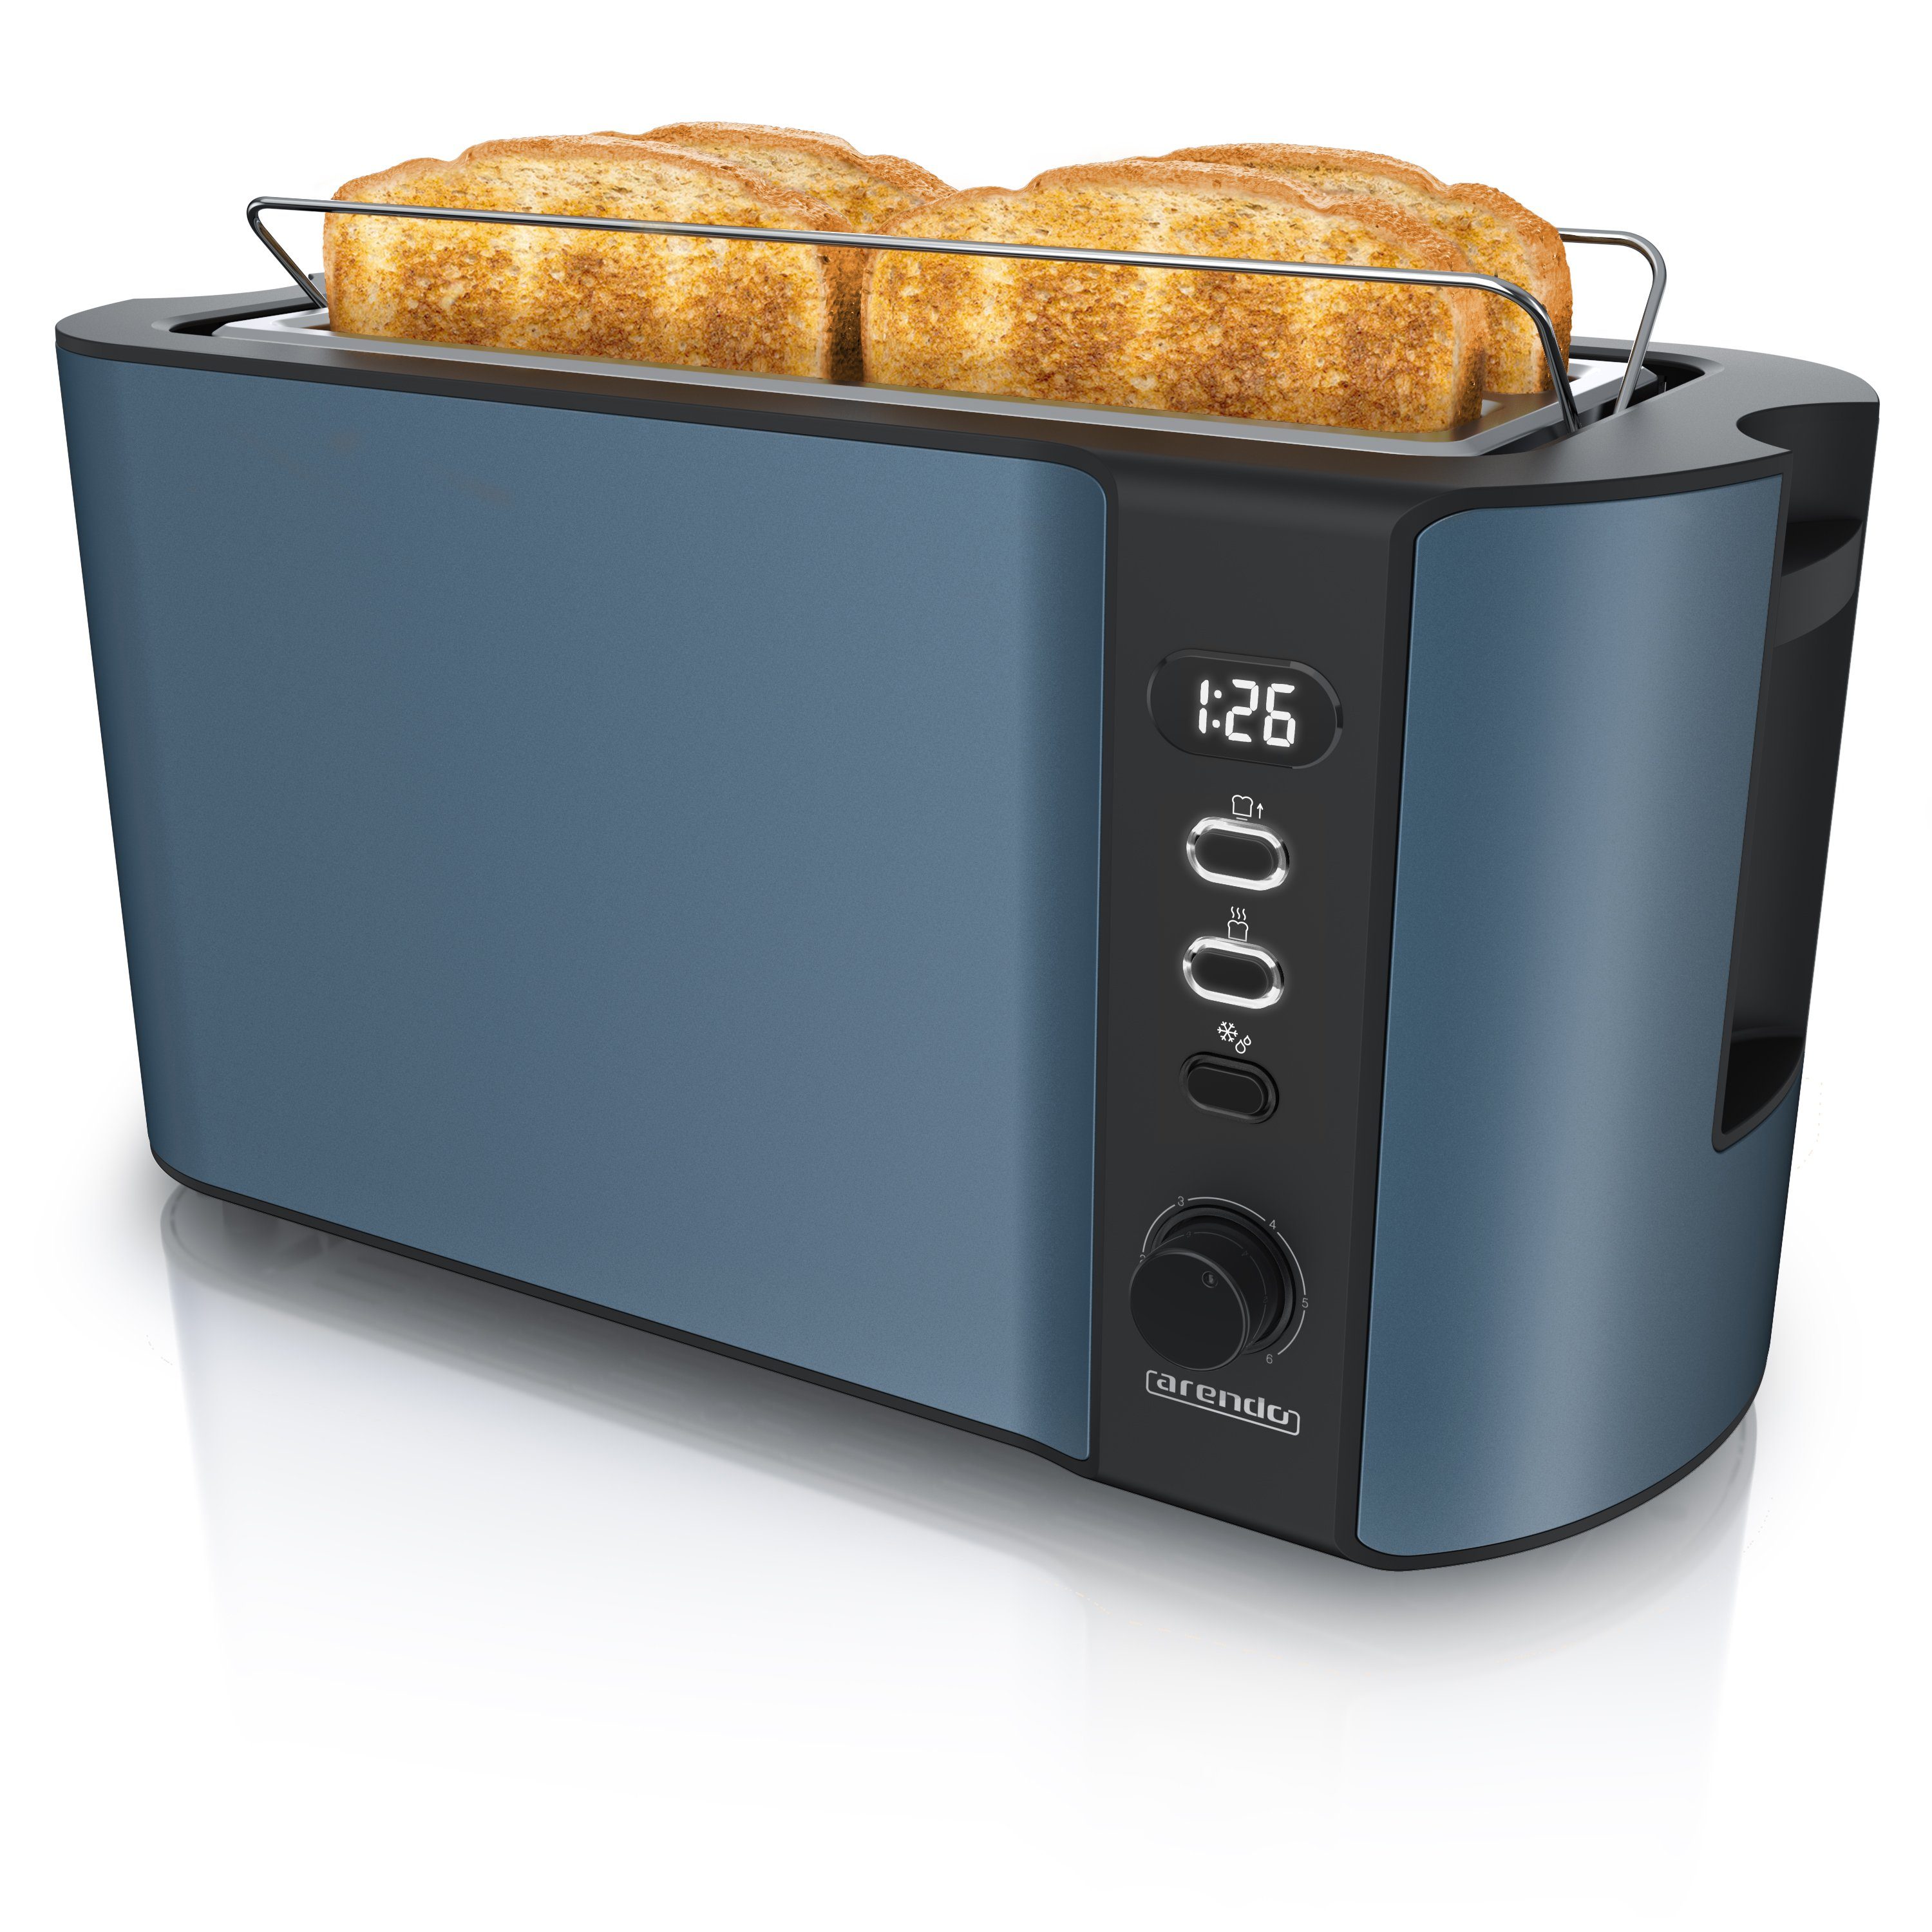 Arendo Toaster, 2 lange 1500 Gehäuse, blau für Langschlitz, Display 4 Scheiben, Brötchenaufsatz, W, Wärmeisolierendes Schlitze